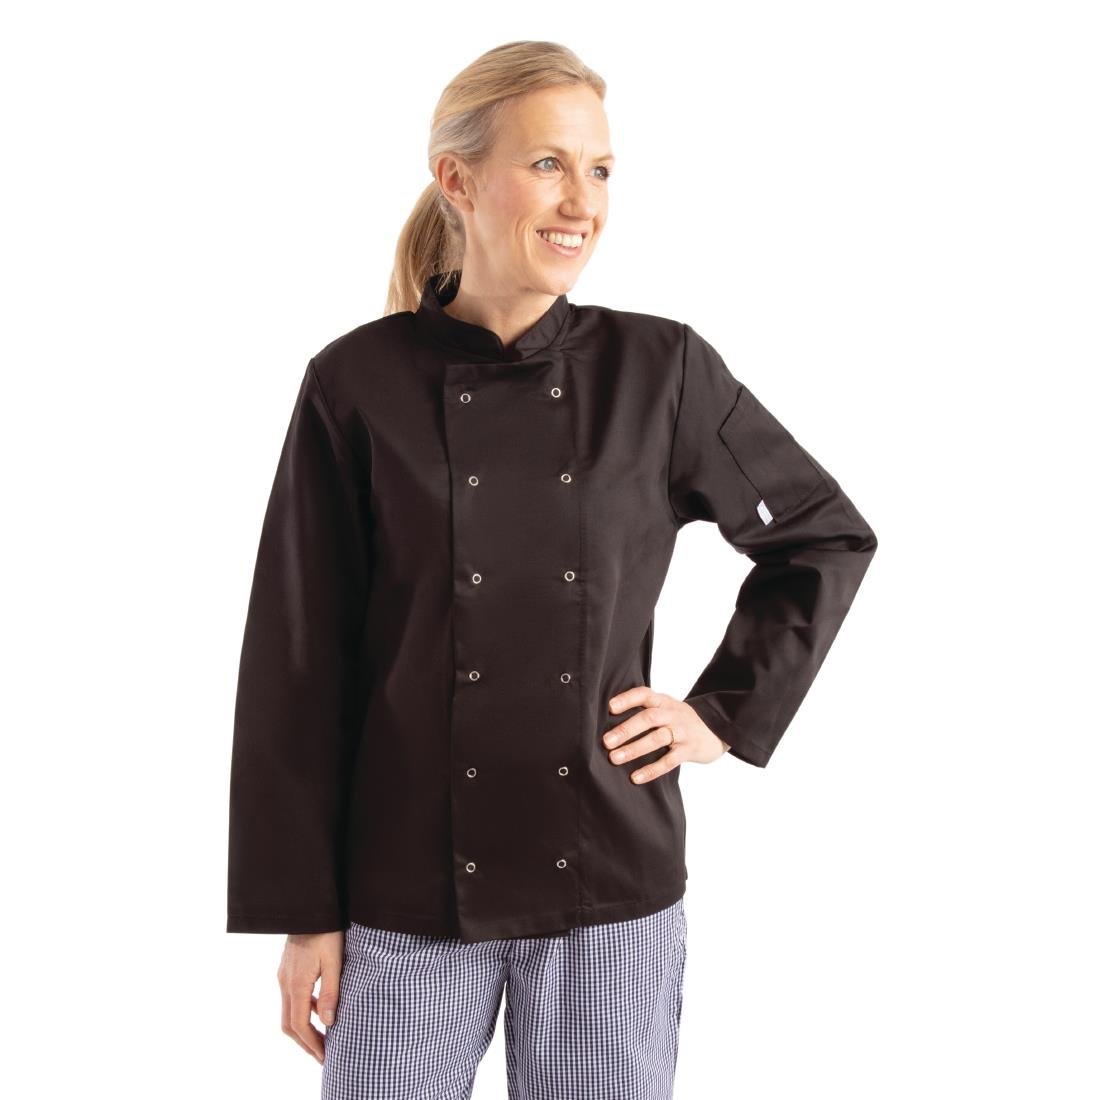 Whites Vegas Unisex Black Long Sleeve Chef Jacket